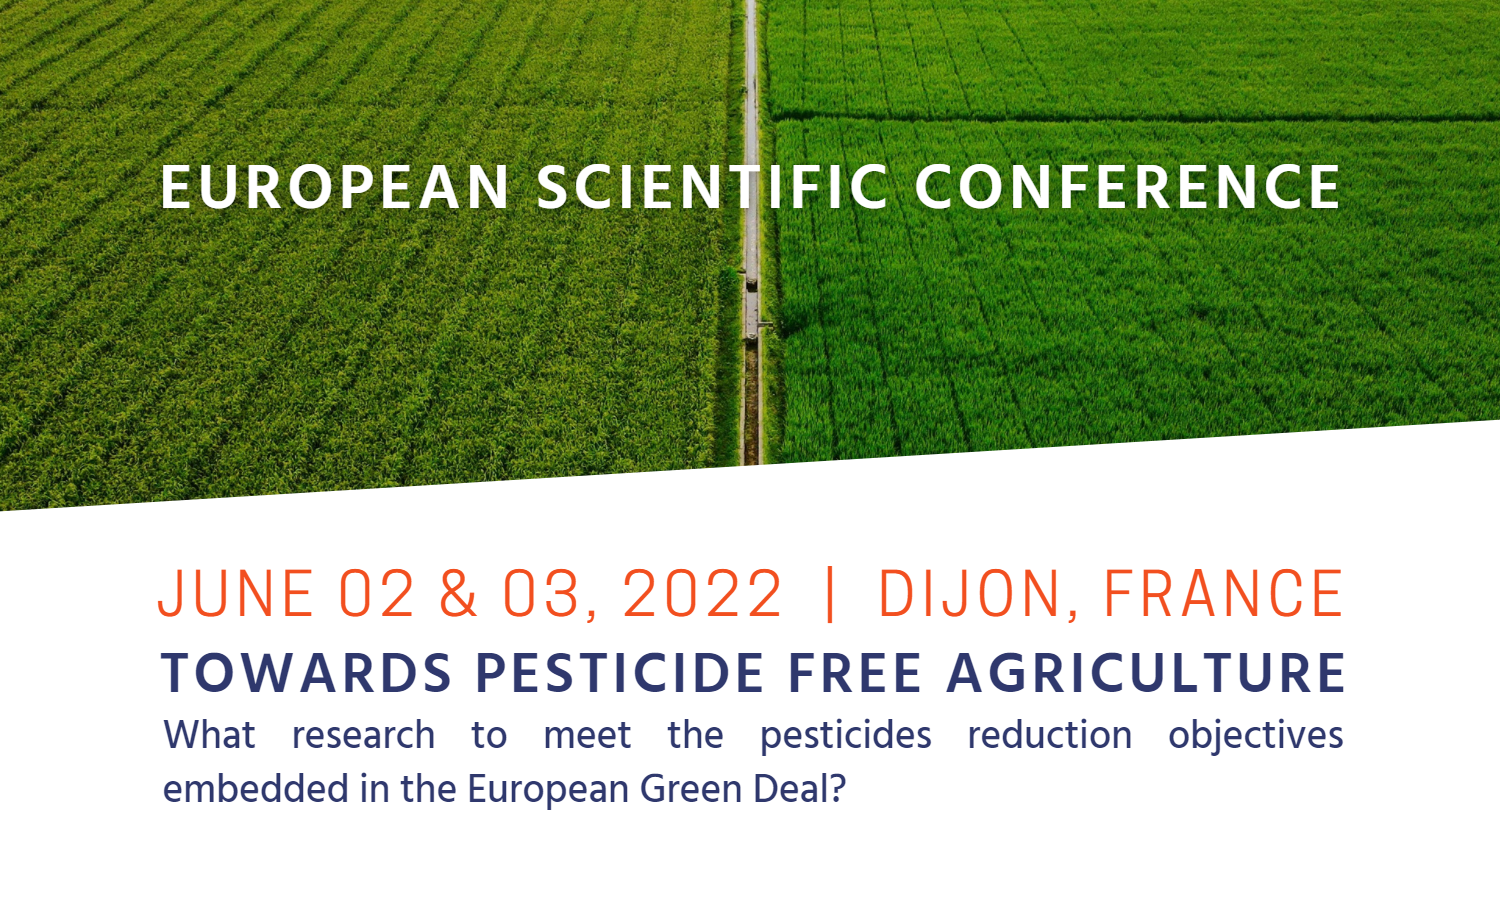 [EVENT] Conférence scientifique européenne - Vers une agriculture sans pesticides